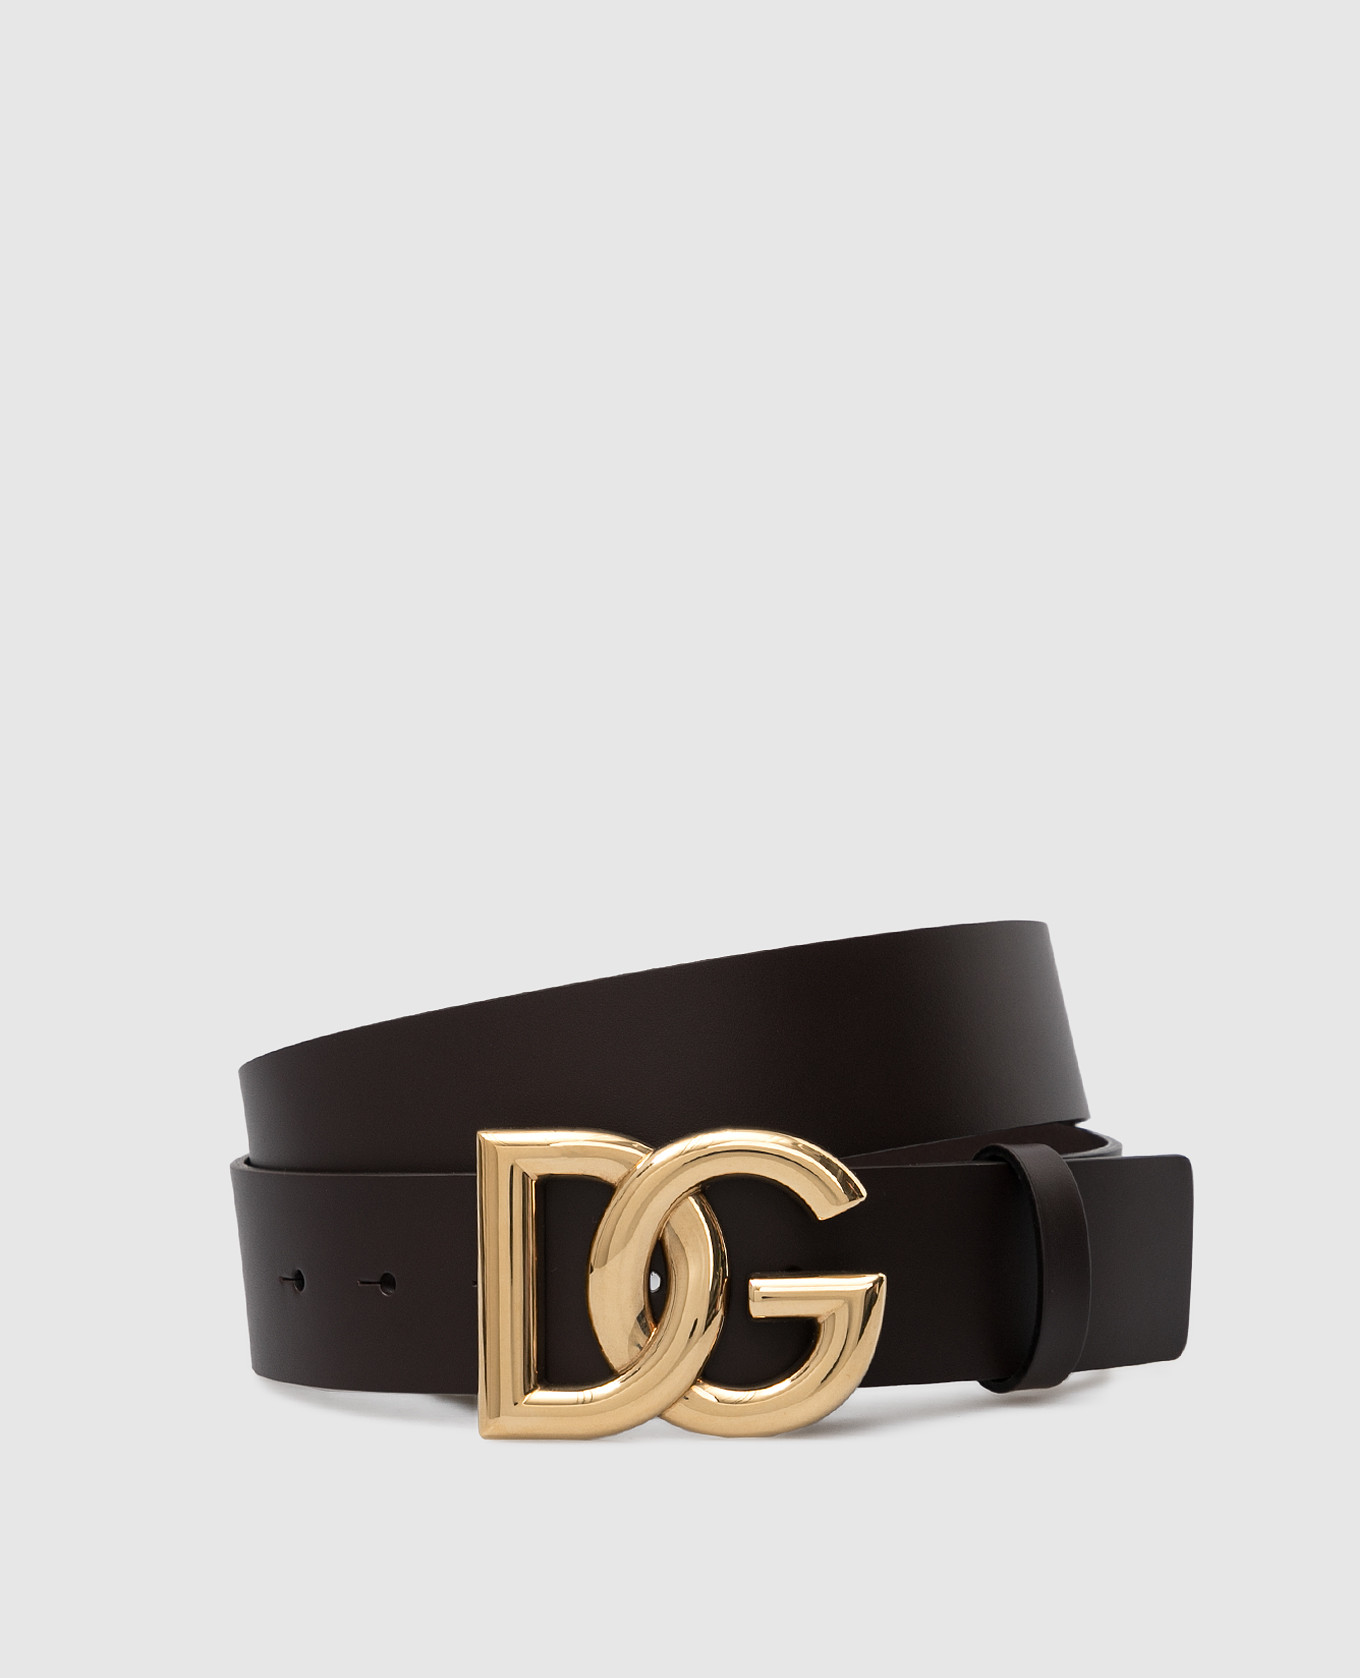 Dark brown leather belt with DG logo